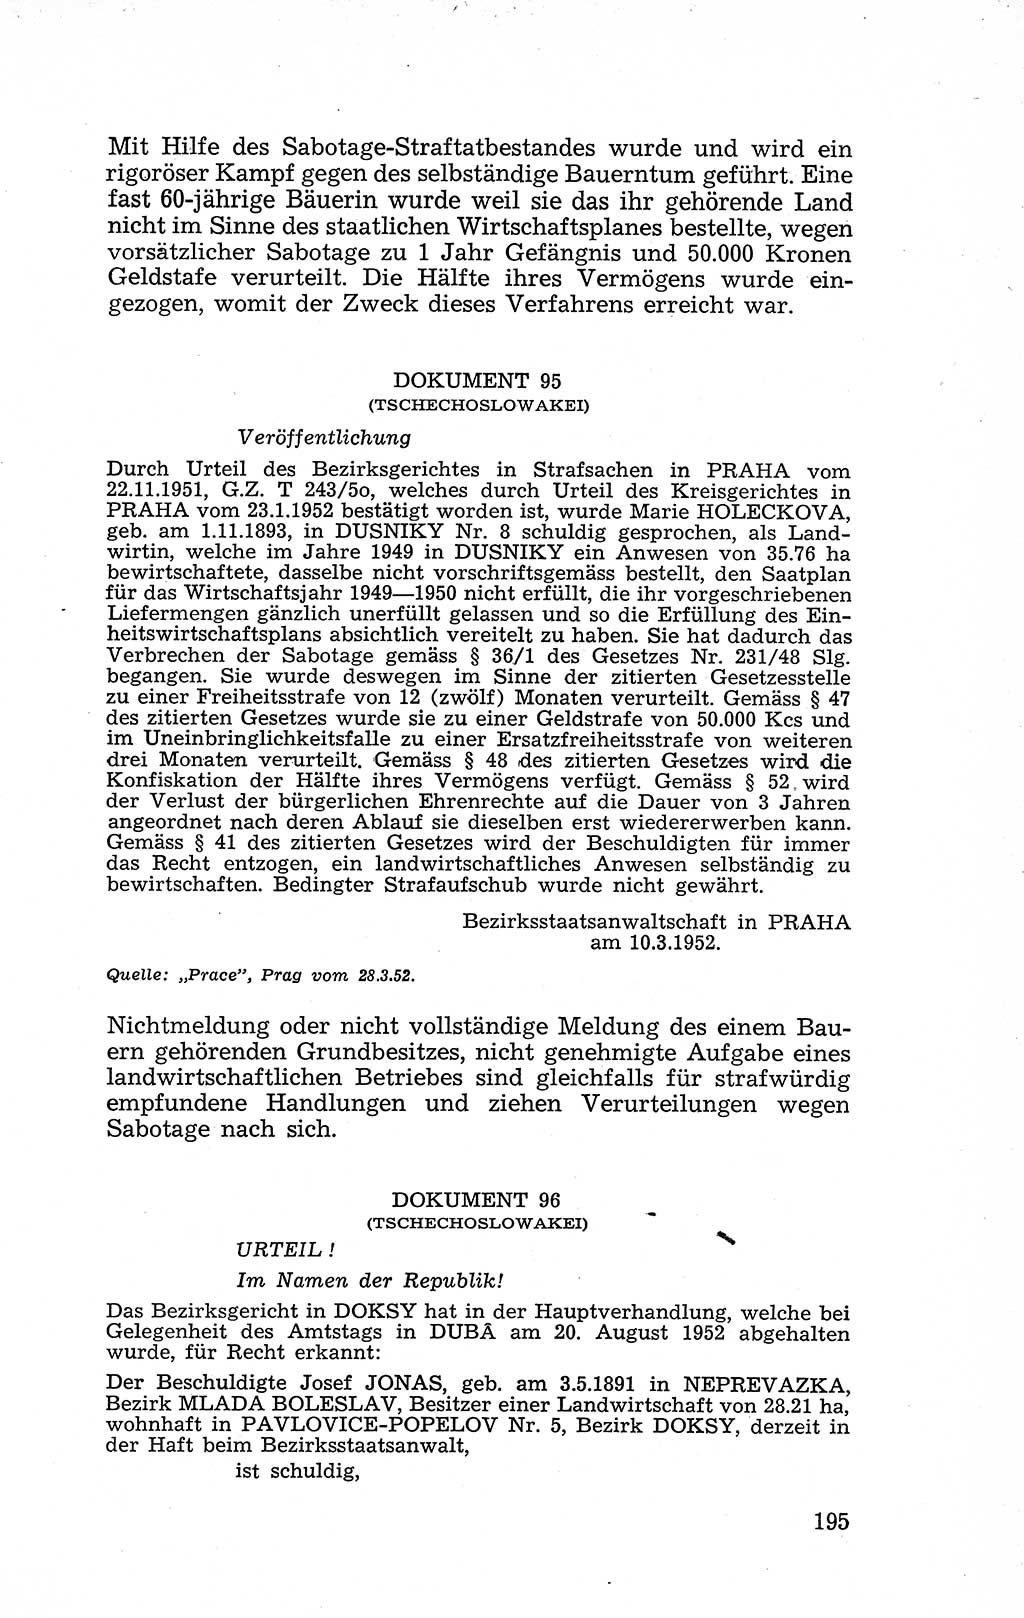 Recht in Fesseln, Dokumente, Internationale Juristen-Kommission [Bundesrepublik Deutschland (BRD)] 1955, Seite 195 (R. Dok. IJK BRD 1955, S. 195)